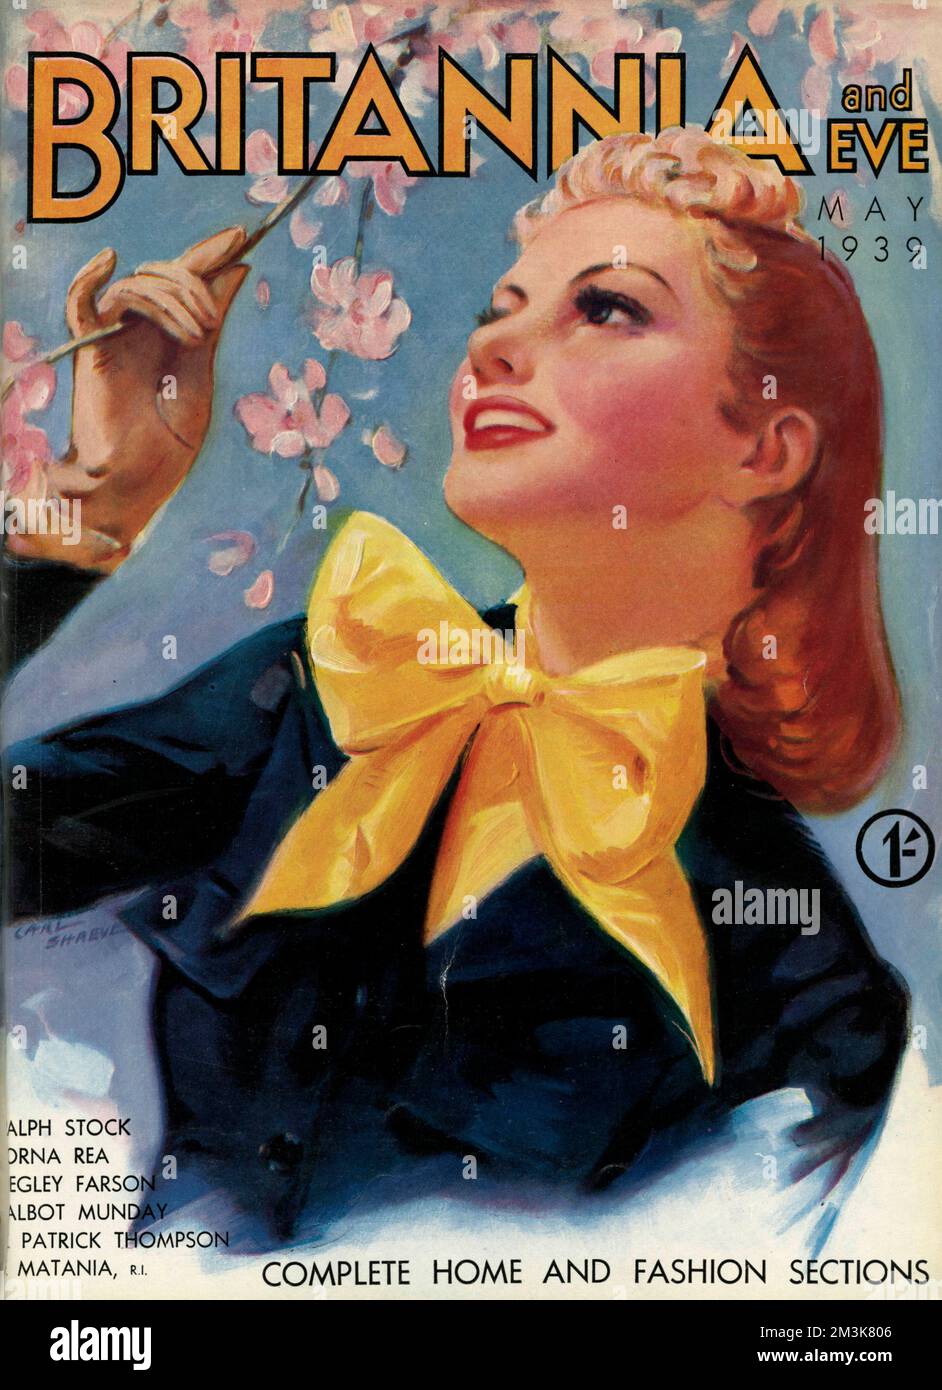 Titelbild von Carl Shreve für Britannia und das Eve Magazin, in dem eine junge Frau im Frühling dargestellt wird. Stockfoto